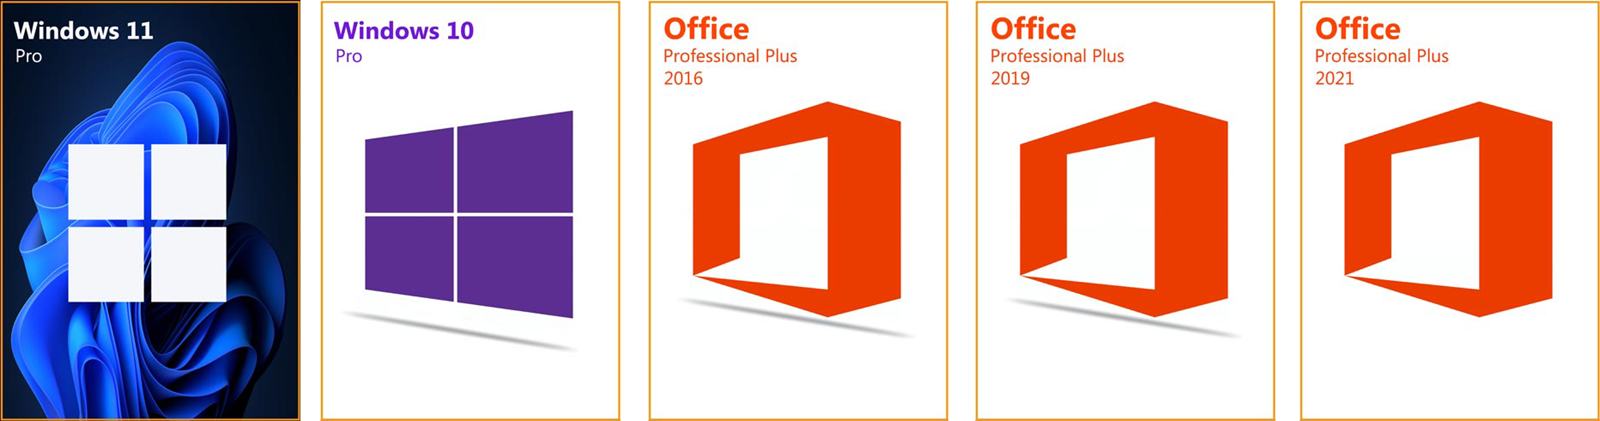 Nadogradite računalo uz niske troškove - Windows 10 Pro samo 7,80 €, Office  2016 Pro Plus 18,78 € - Promo @ Bug.hr